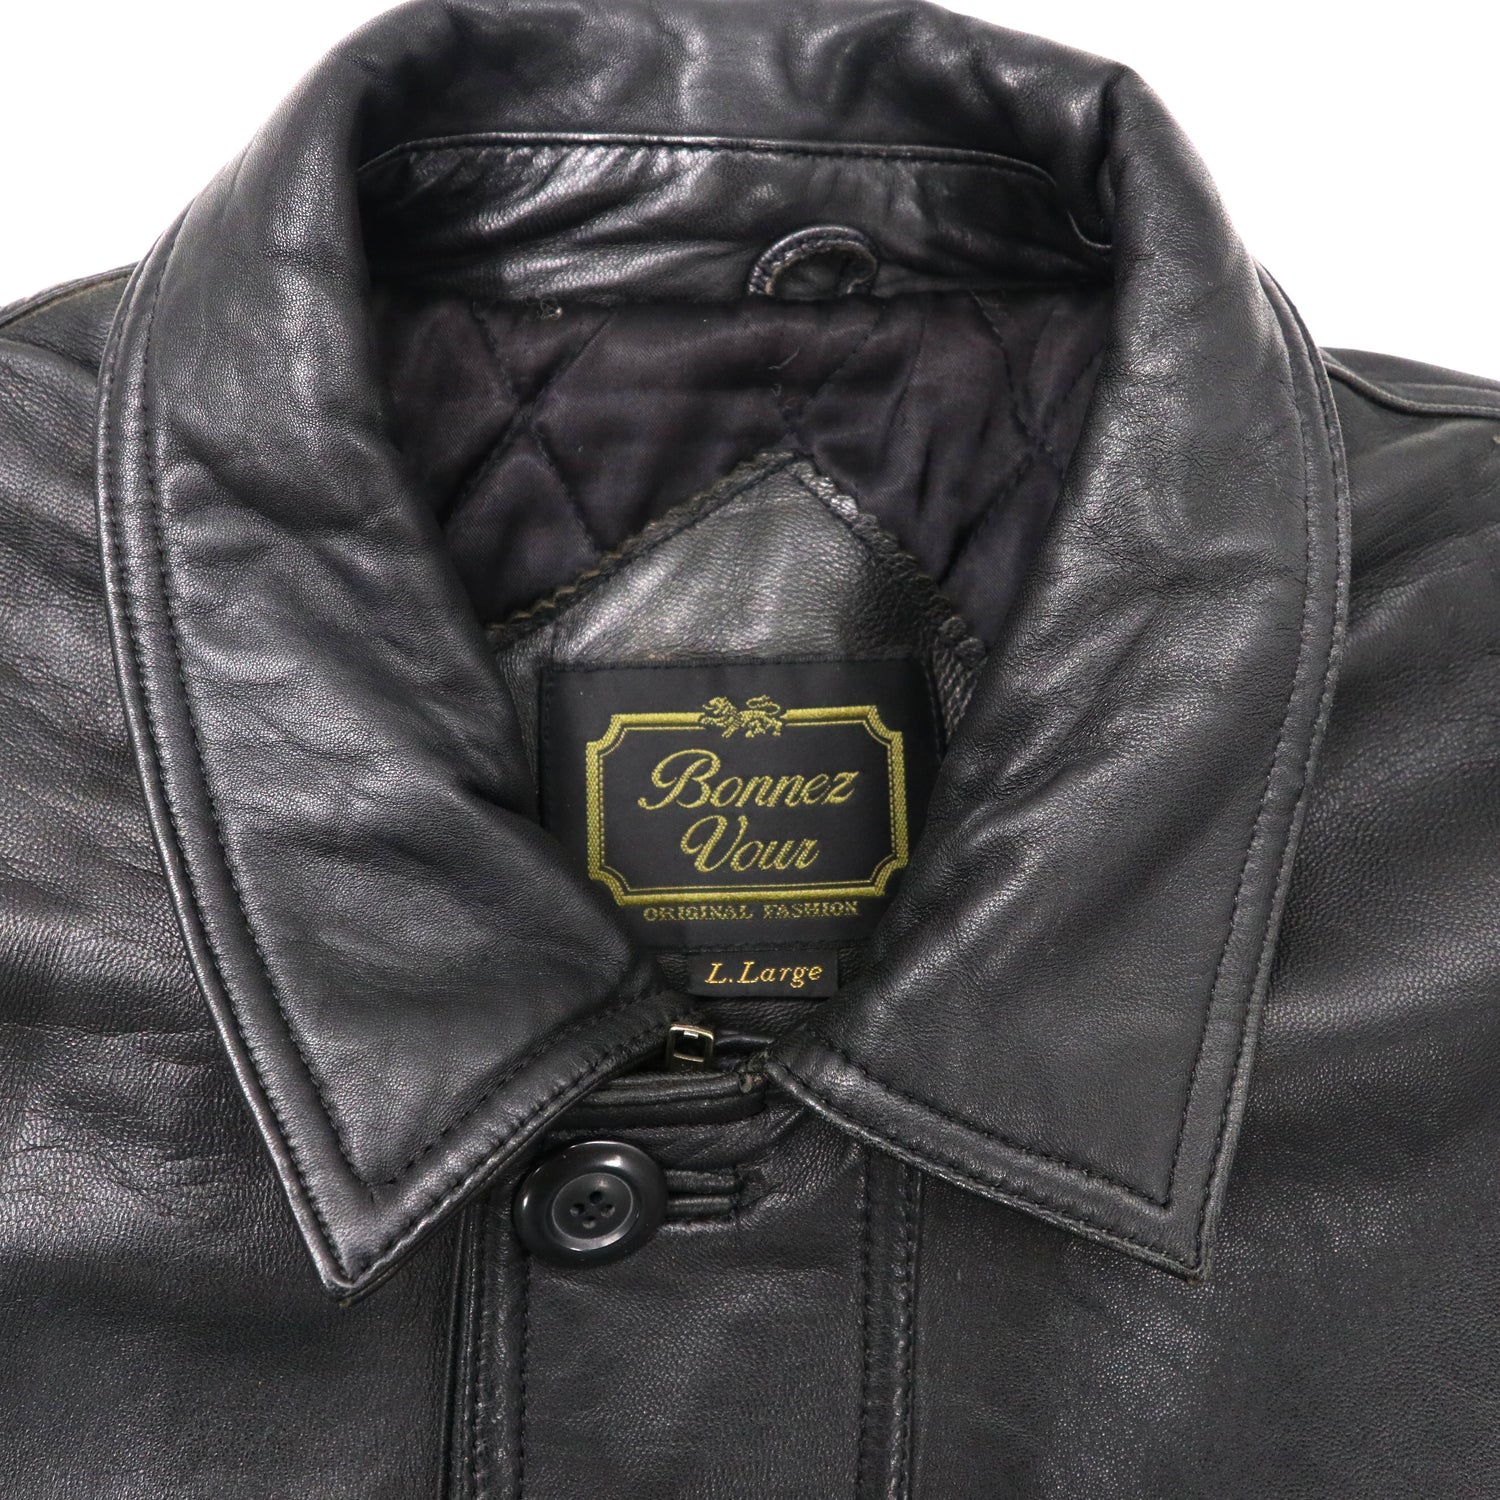 BONNEZ VOUS Leather Car Coat LL Black Lamb Leather Quilting Liner